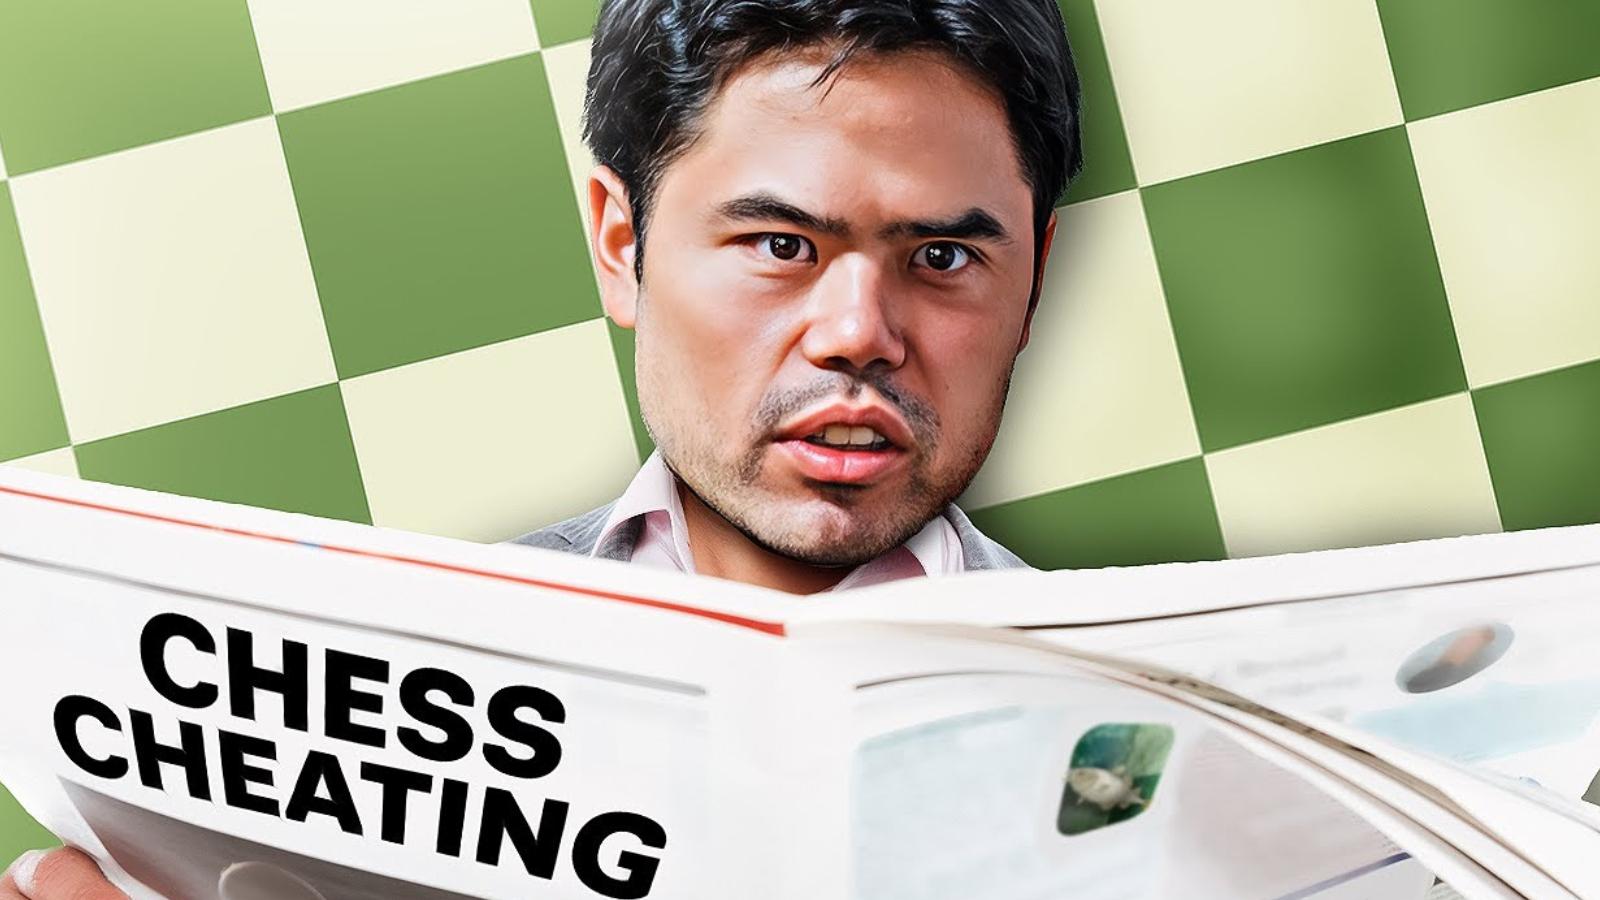 hikaru responds to chess cheating